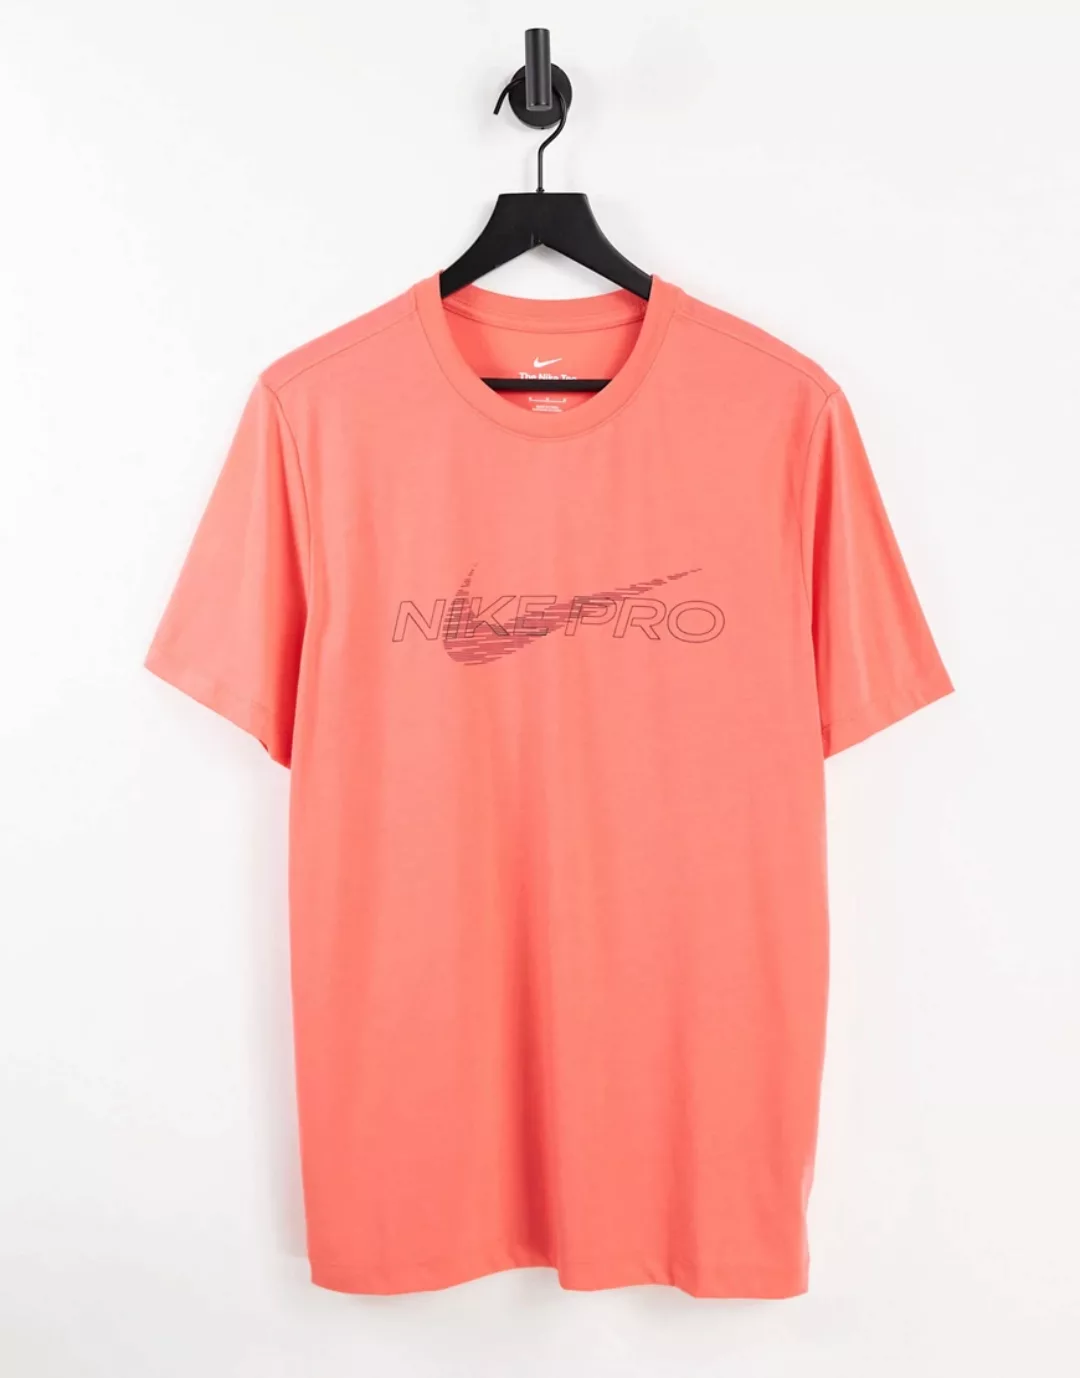 Nike – Pro Training – T-Shirt in Orange günstig online kaufen